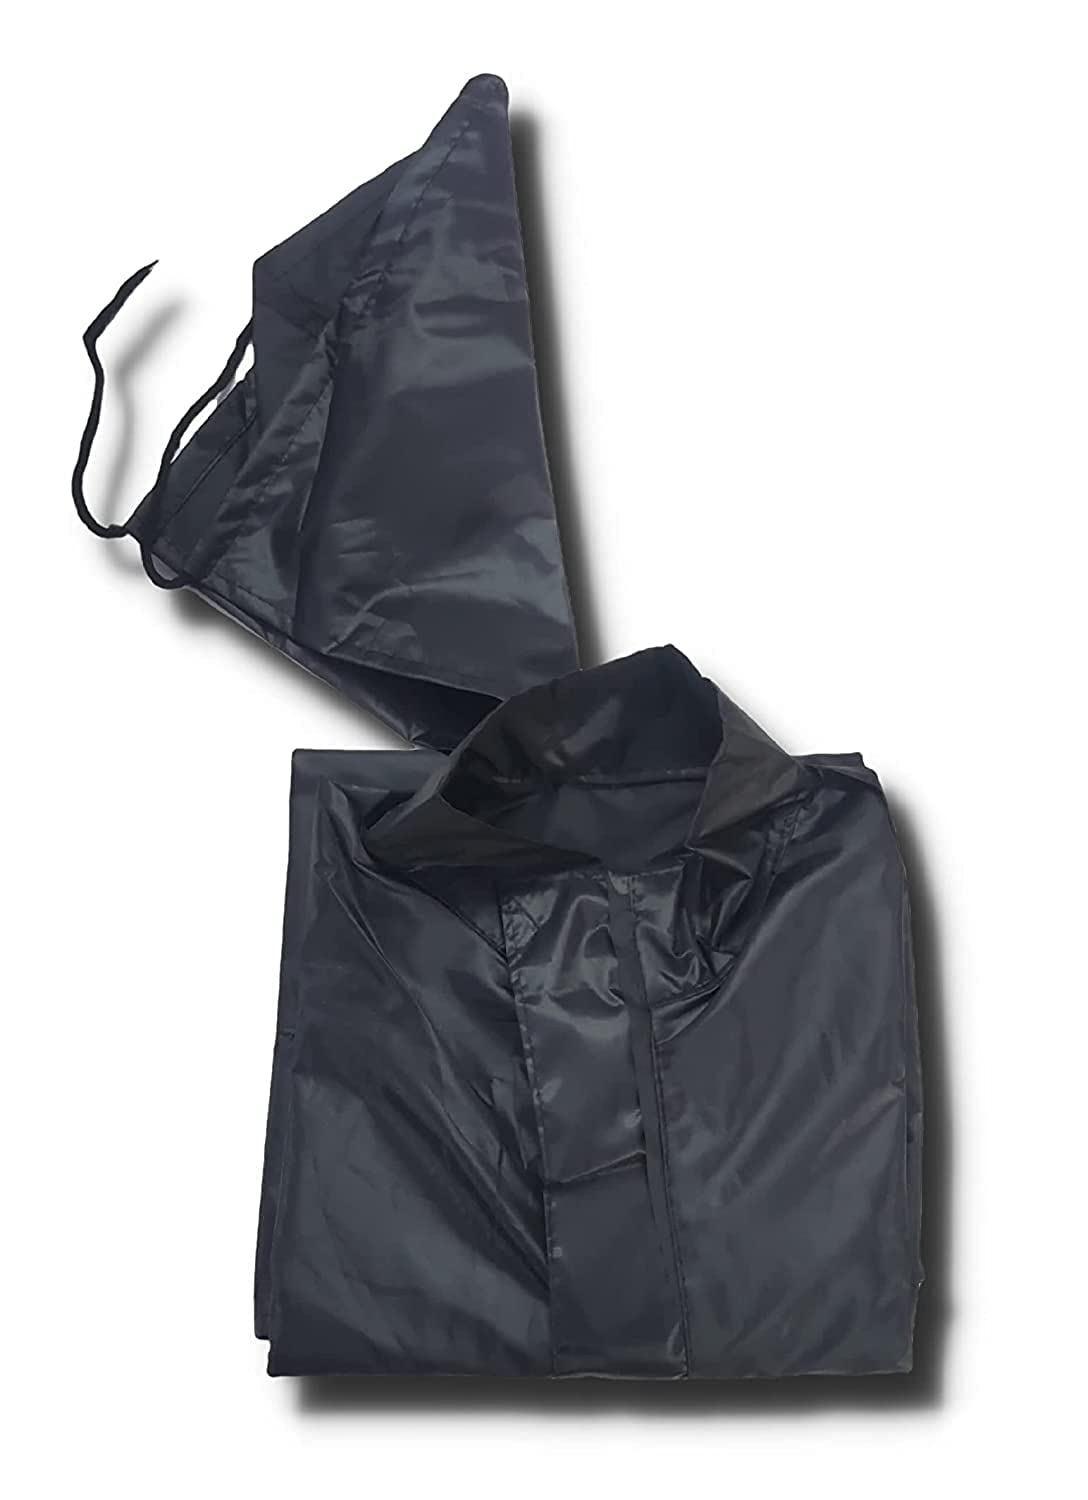 Raincoat For Men Waterproof Surat - Double Layer With Hood Raincoat For Men  In Surat at Rs 350 | Waterproof Garment in Surat | ID: 23552332033